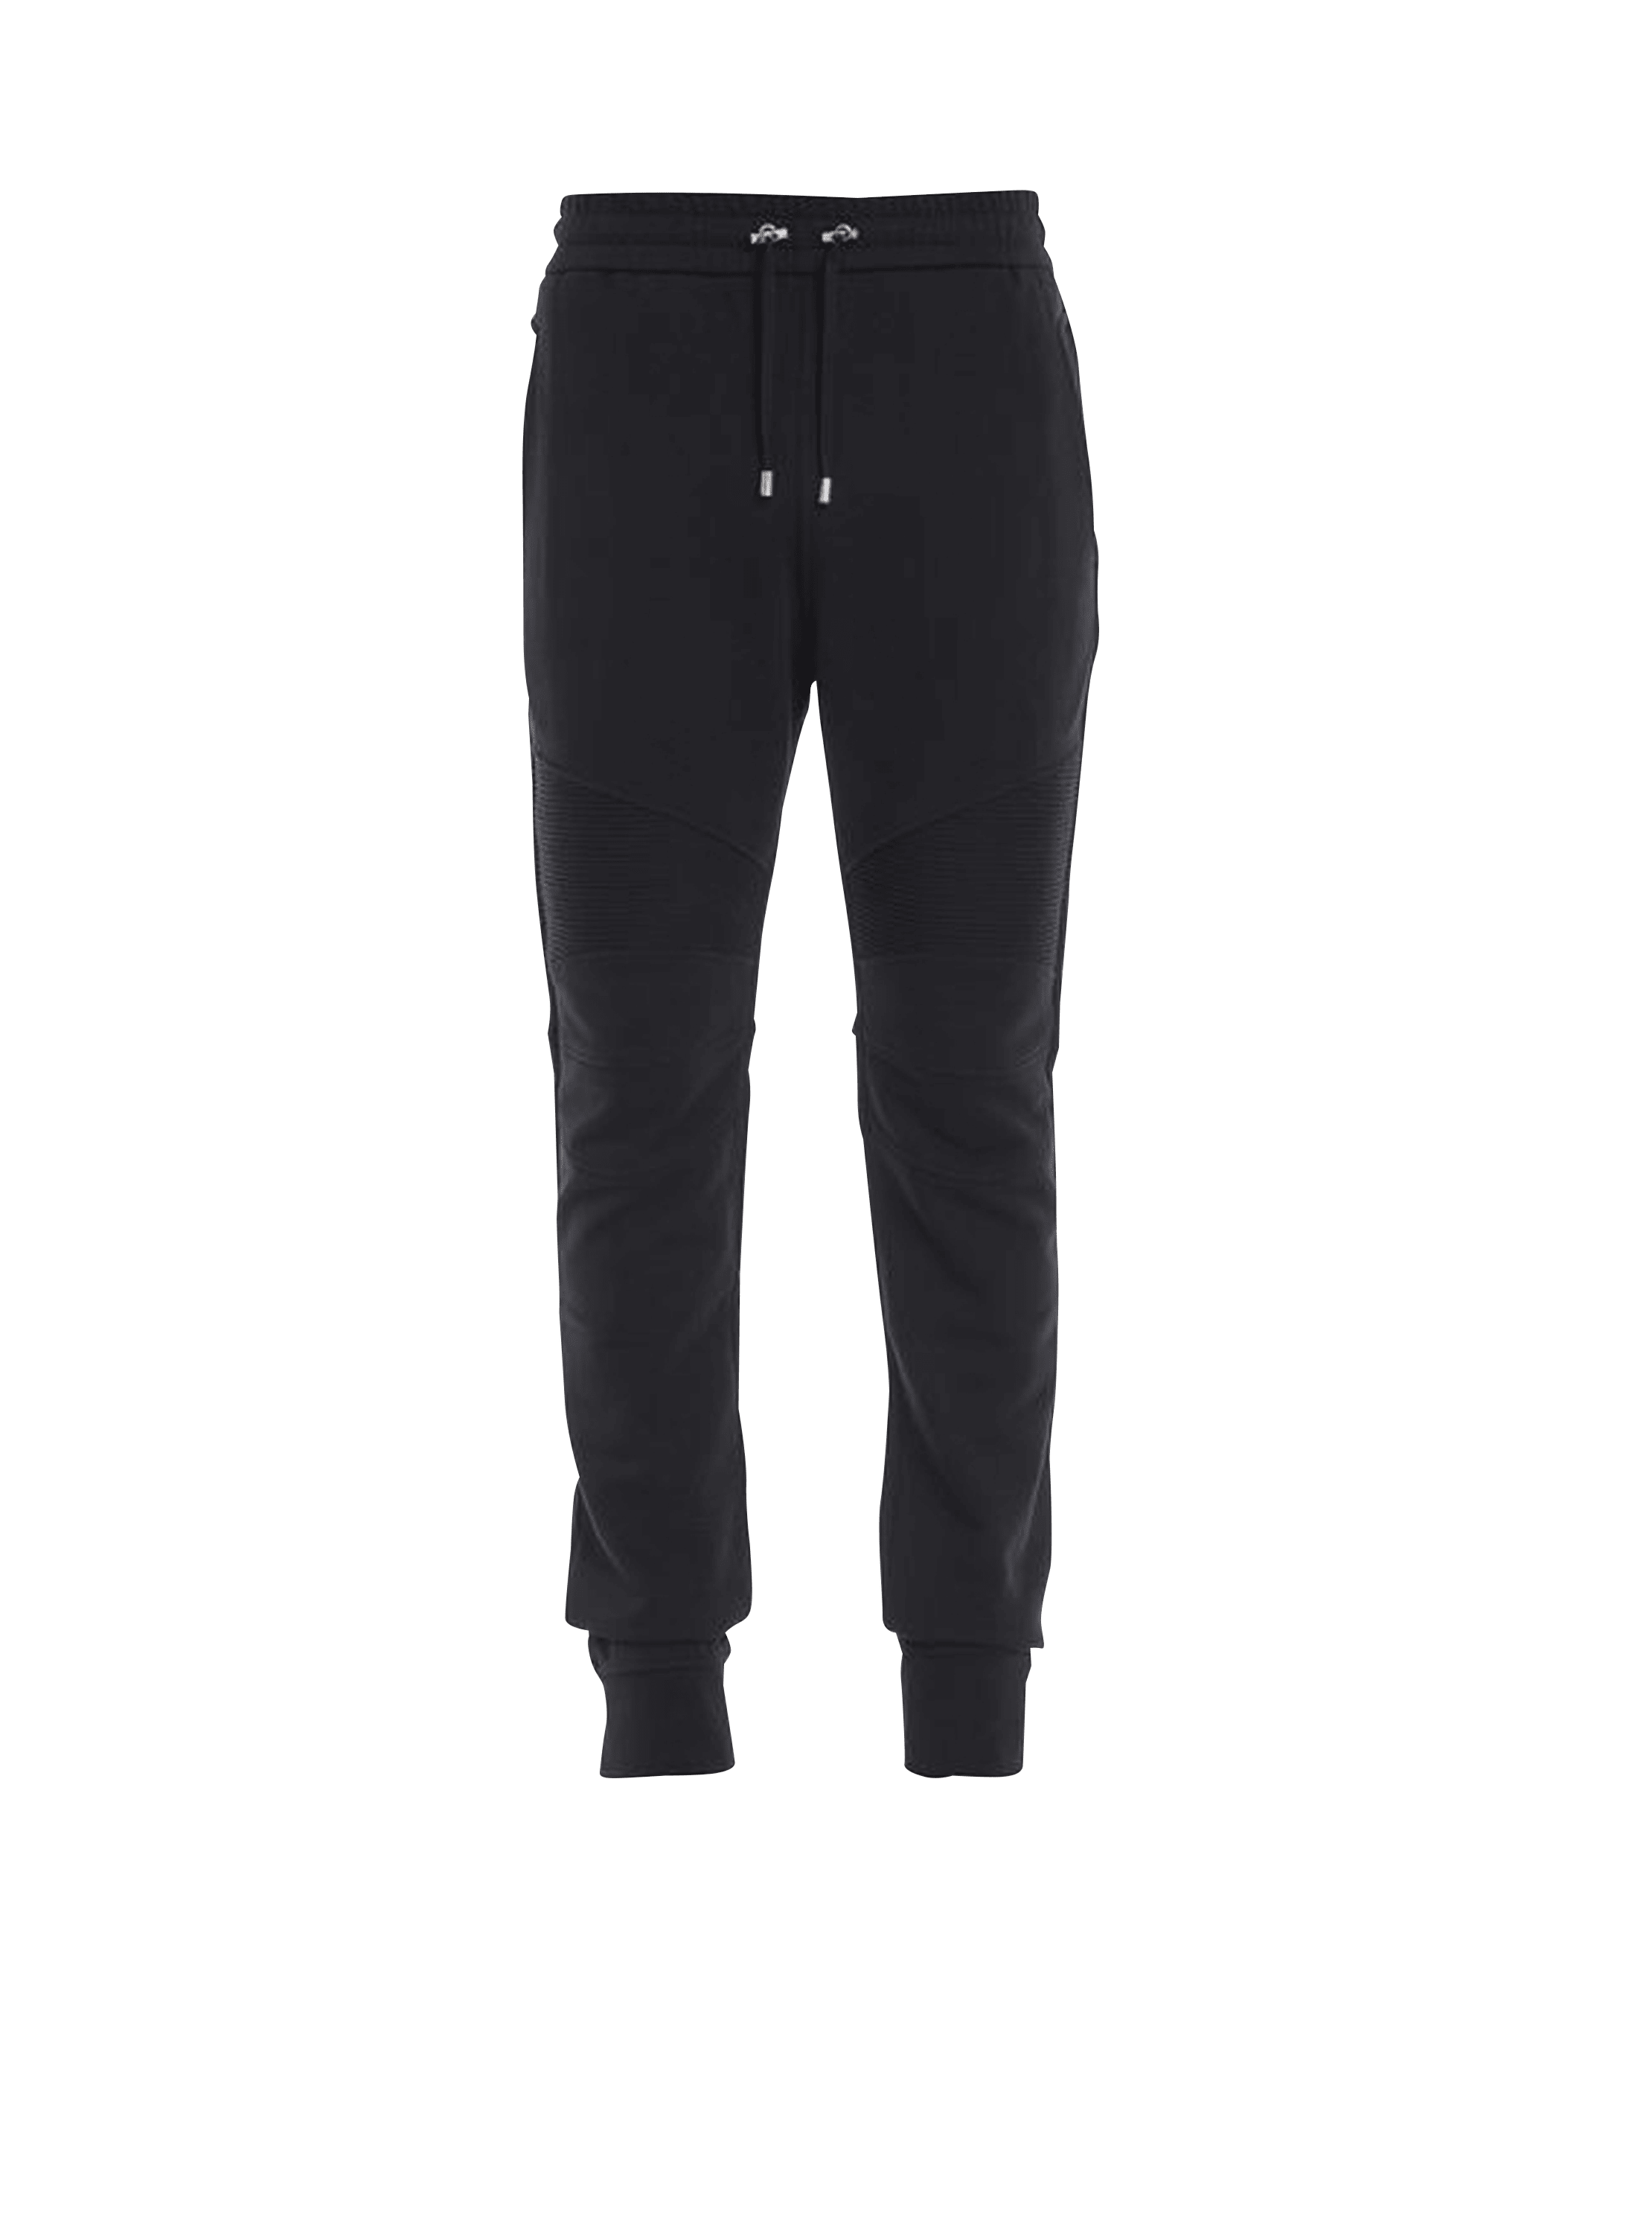 Pantalon de jogging en coton imprimé logo Balmain, noir, hi-res